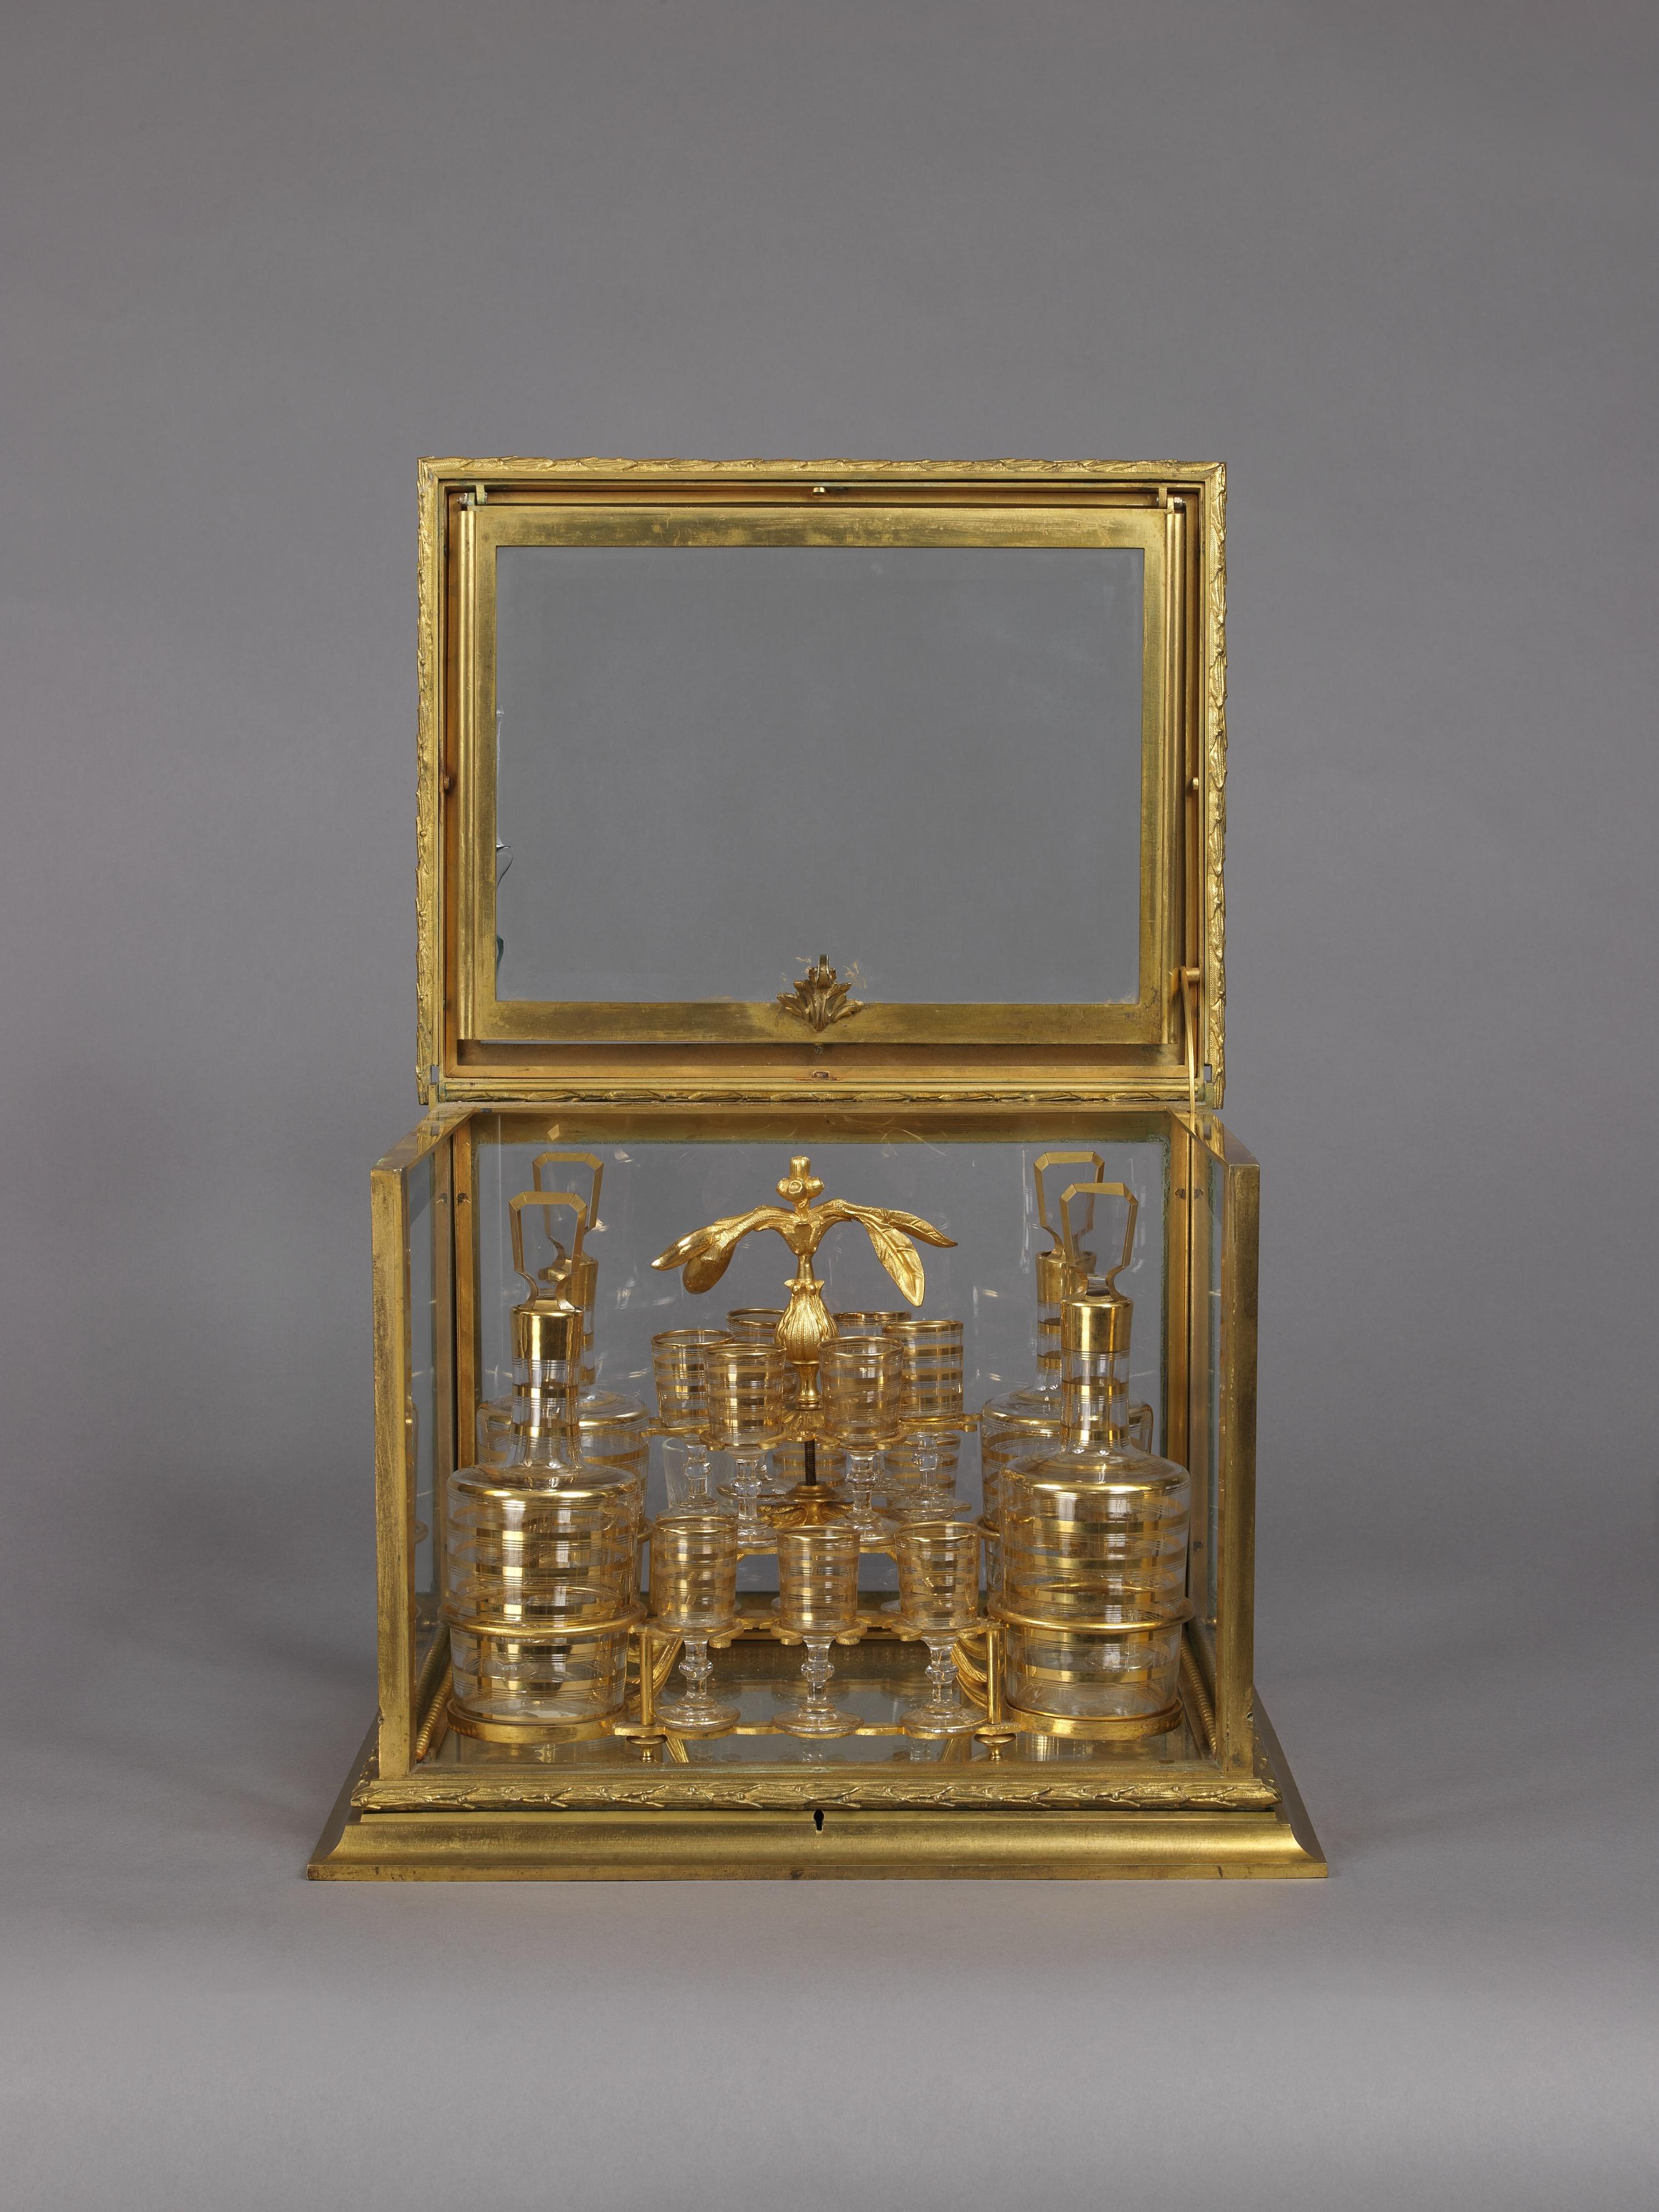 Ensemble de carafes en bronze doré et en verre taillé, fin et décoratif. 

Français, vers 1890. 

Ce bel ensemble de carafes décoratives se compose d'un coffret en bronze doré avec des panneaux en verre et un couvercle 